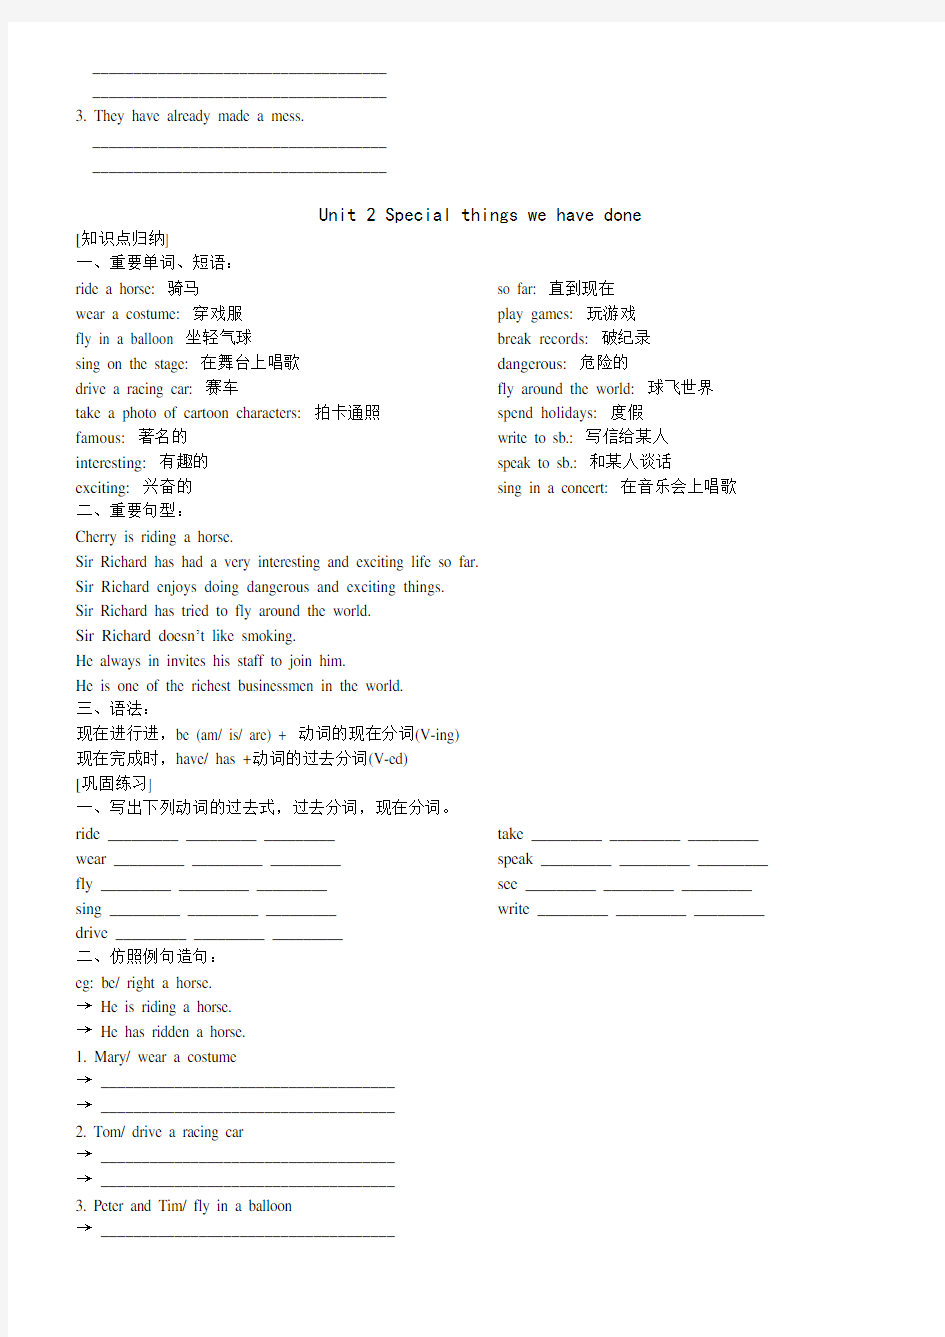 (完整版)香港朗文5B各单元重点知识与练习(1)